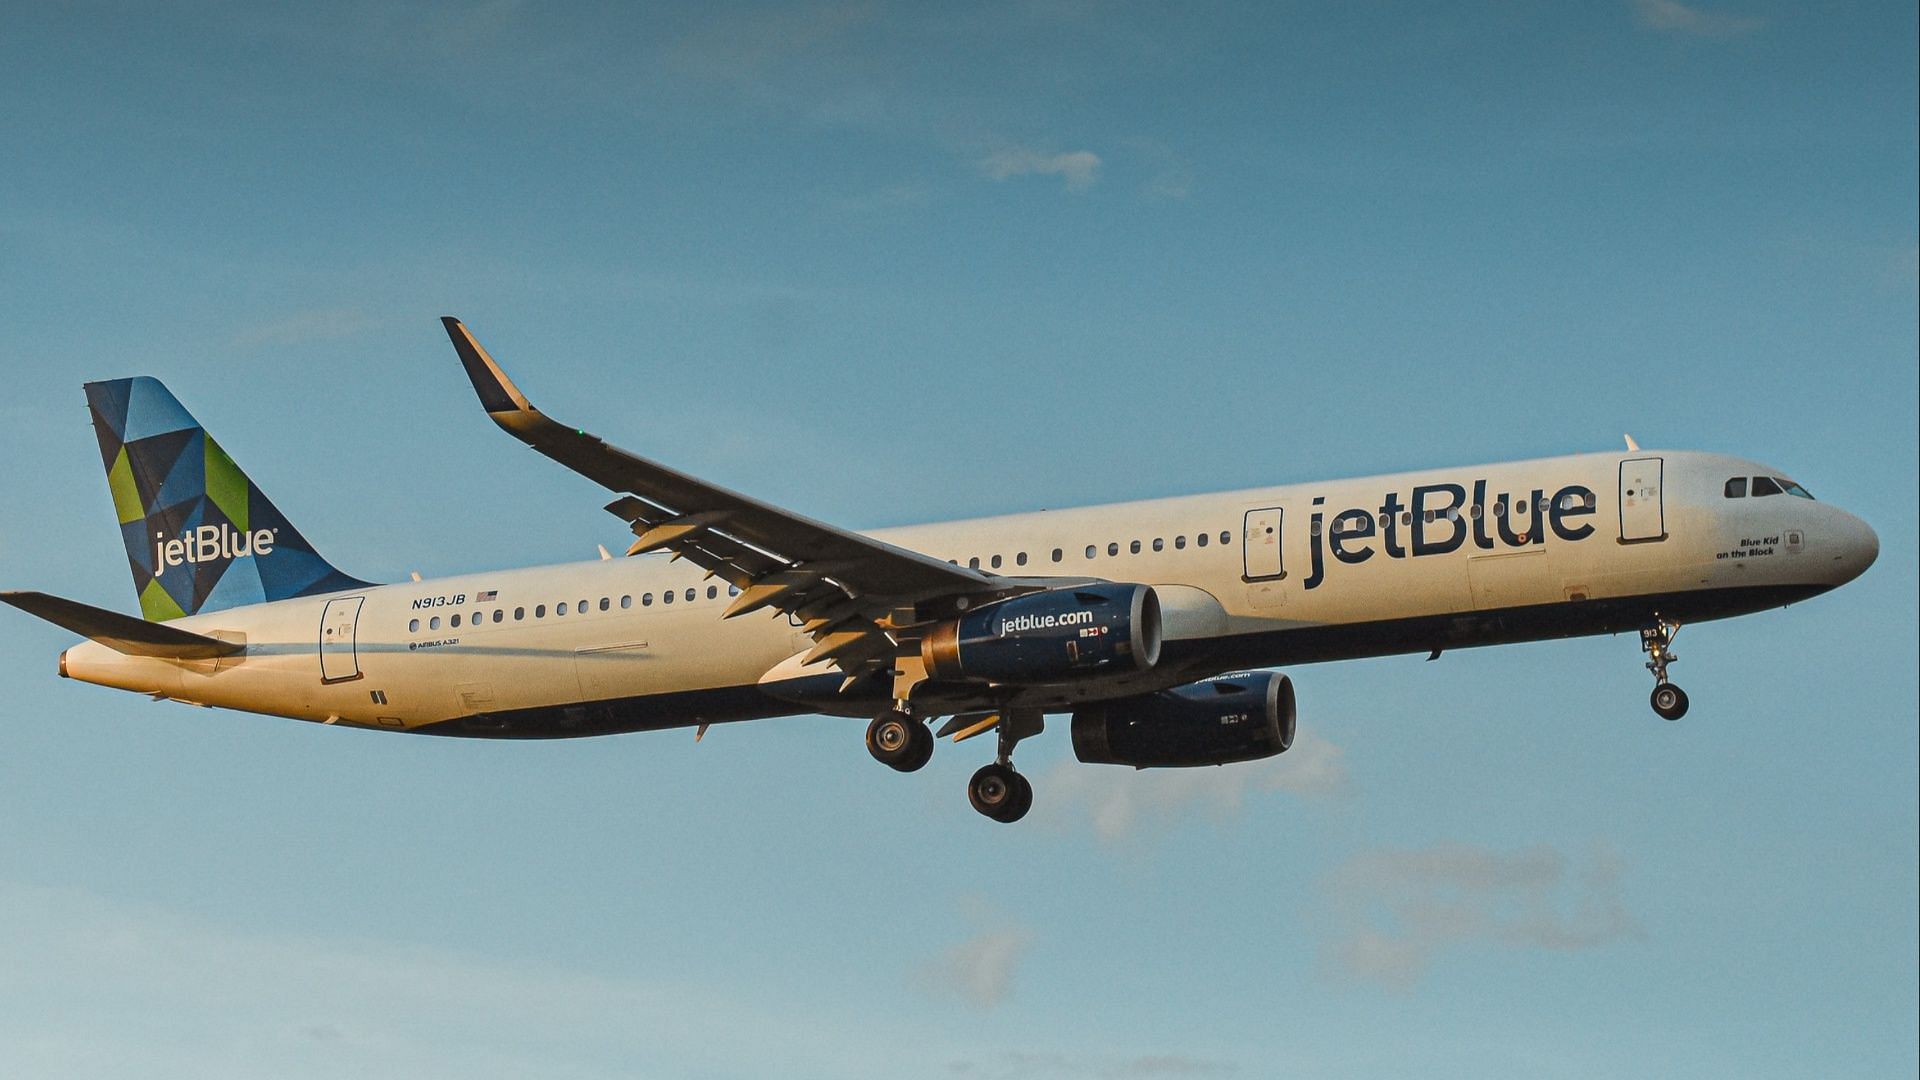 Severe turbulence leaves 8 JetBlue passengers hospitalized (Photo by Sachin Amjhad on Unsplash)